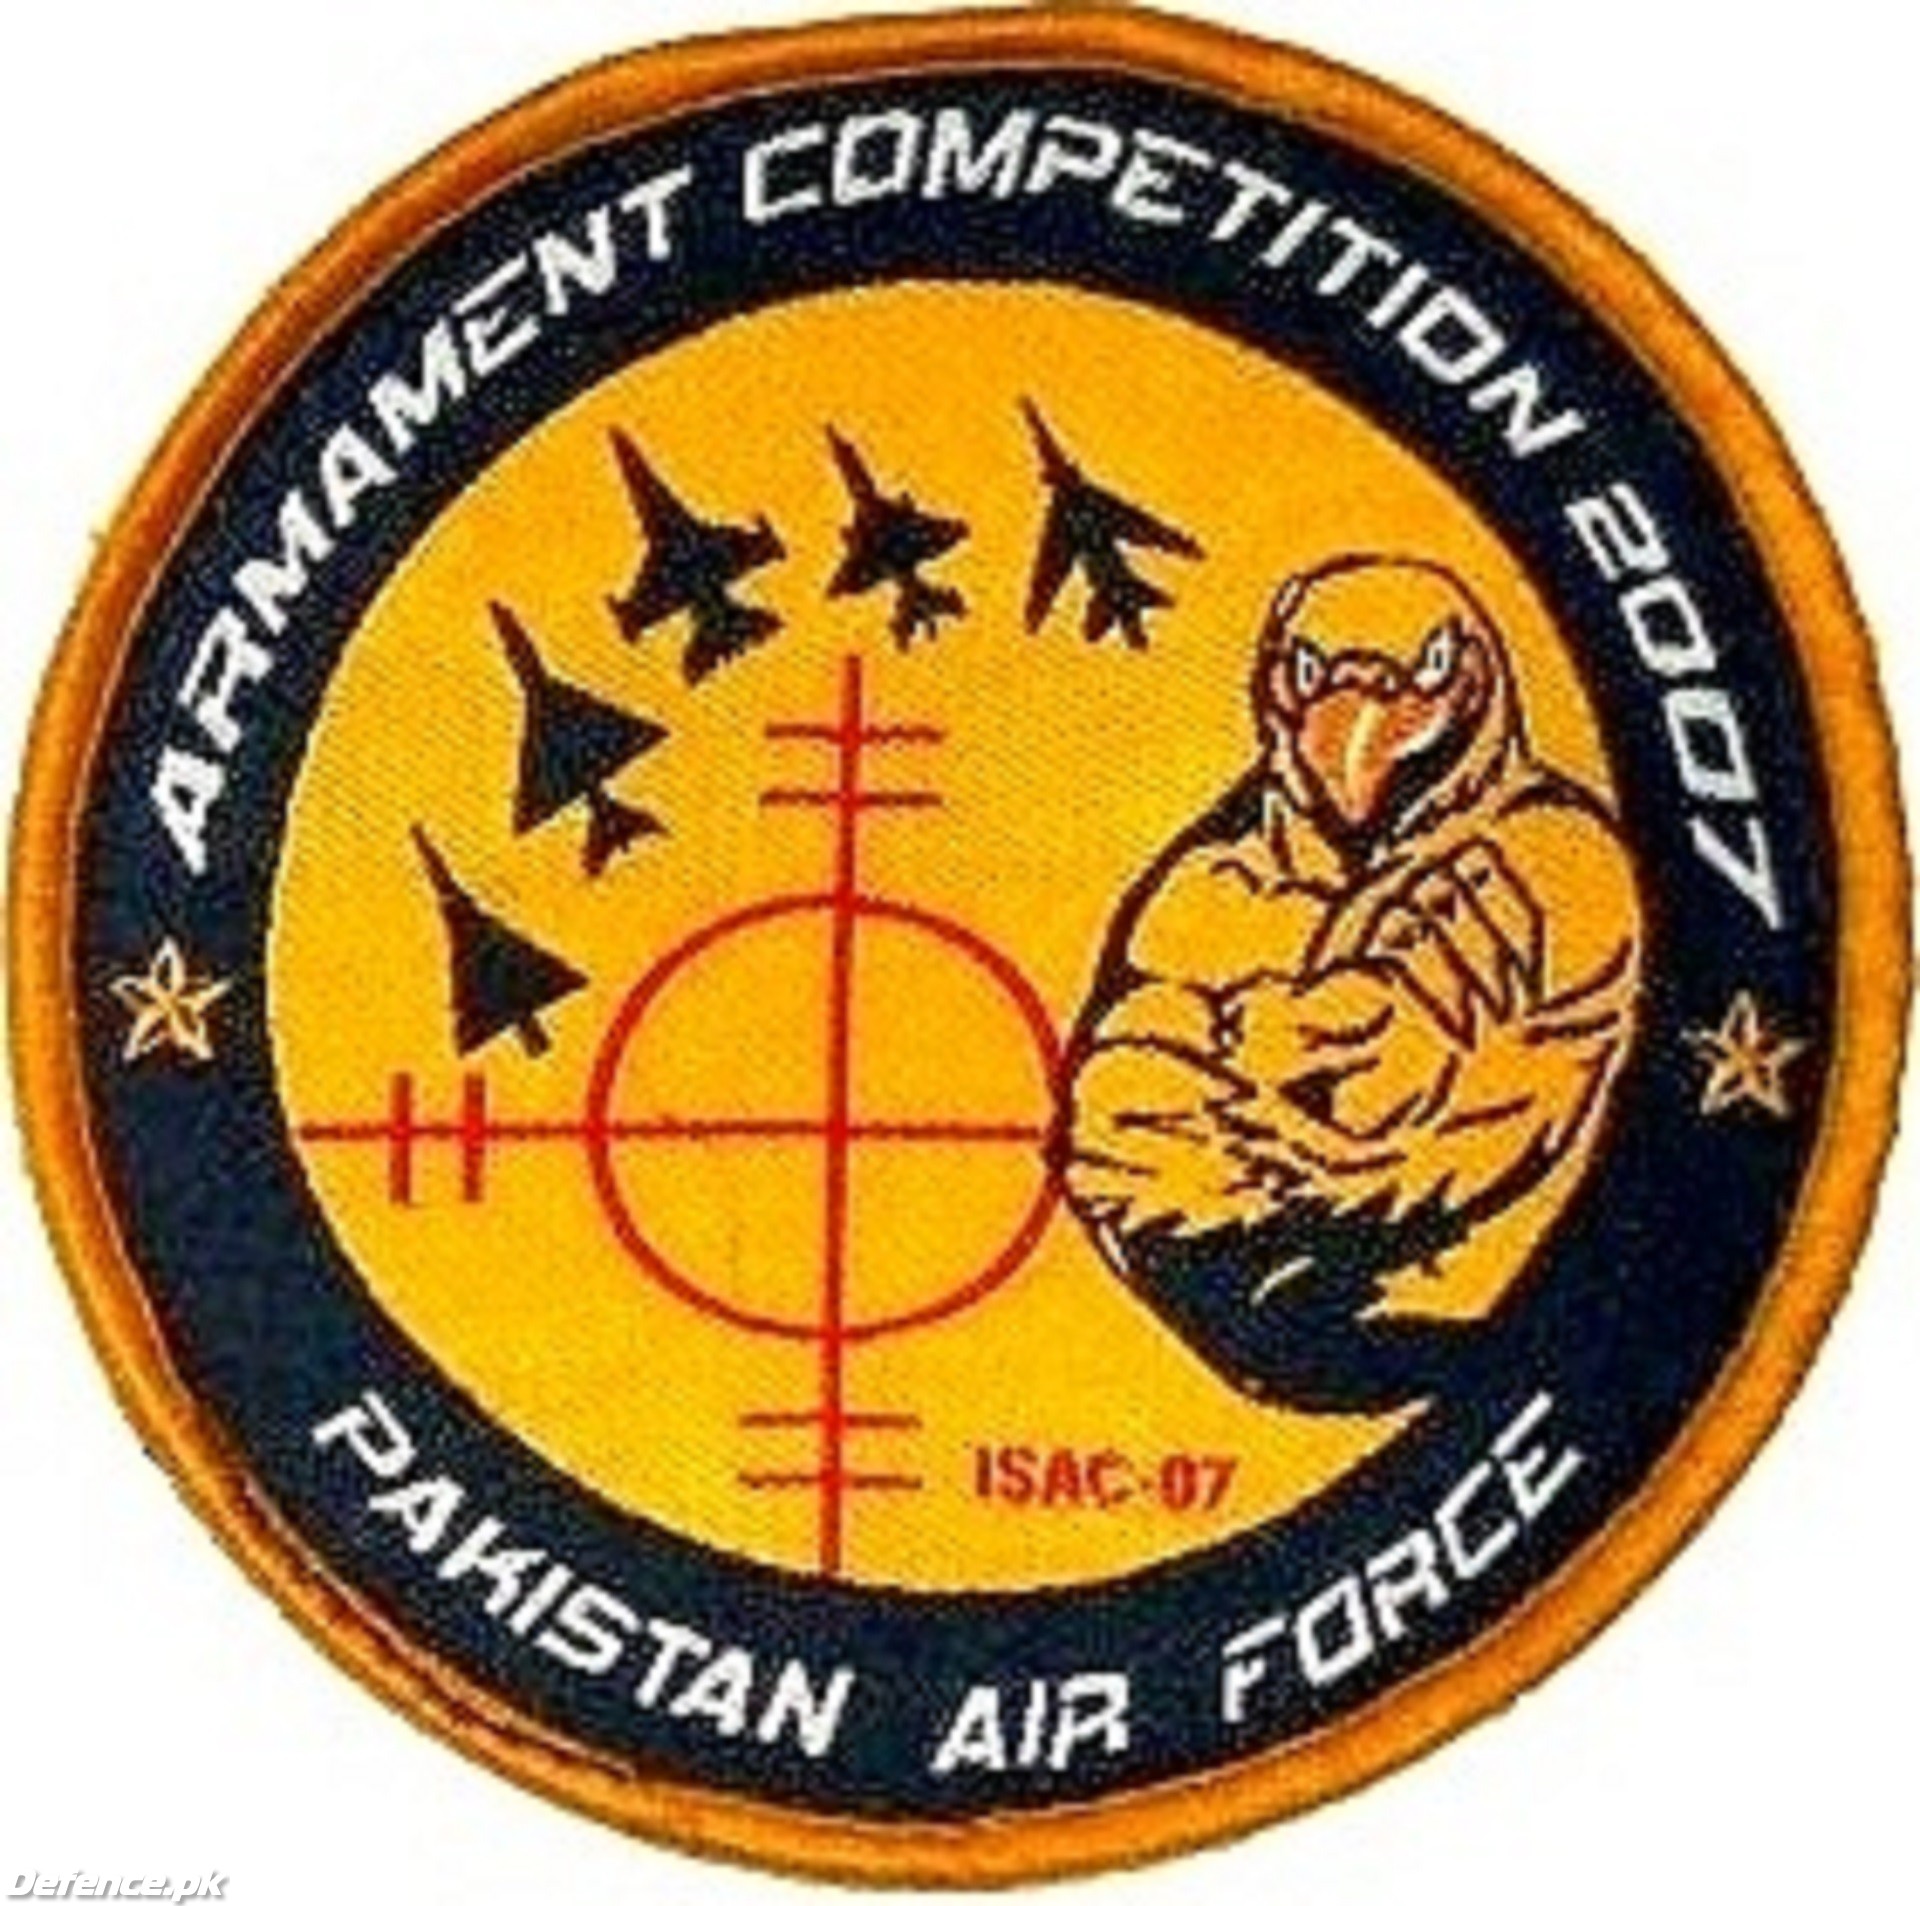 Pakistan Air Force: Armament Competition 2007 Shoulder Patch